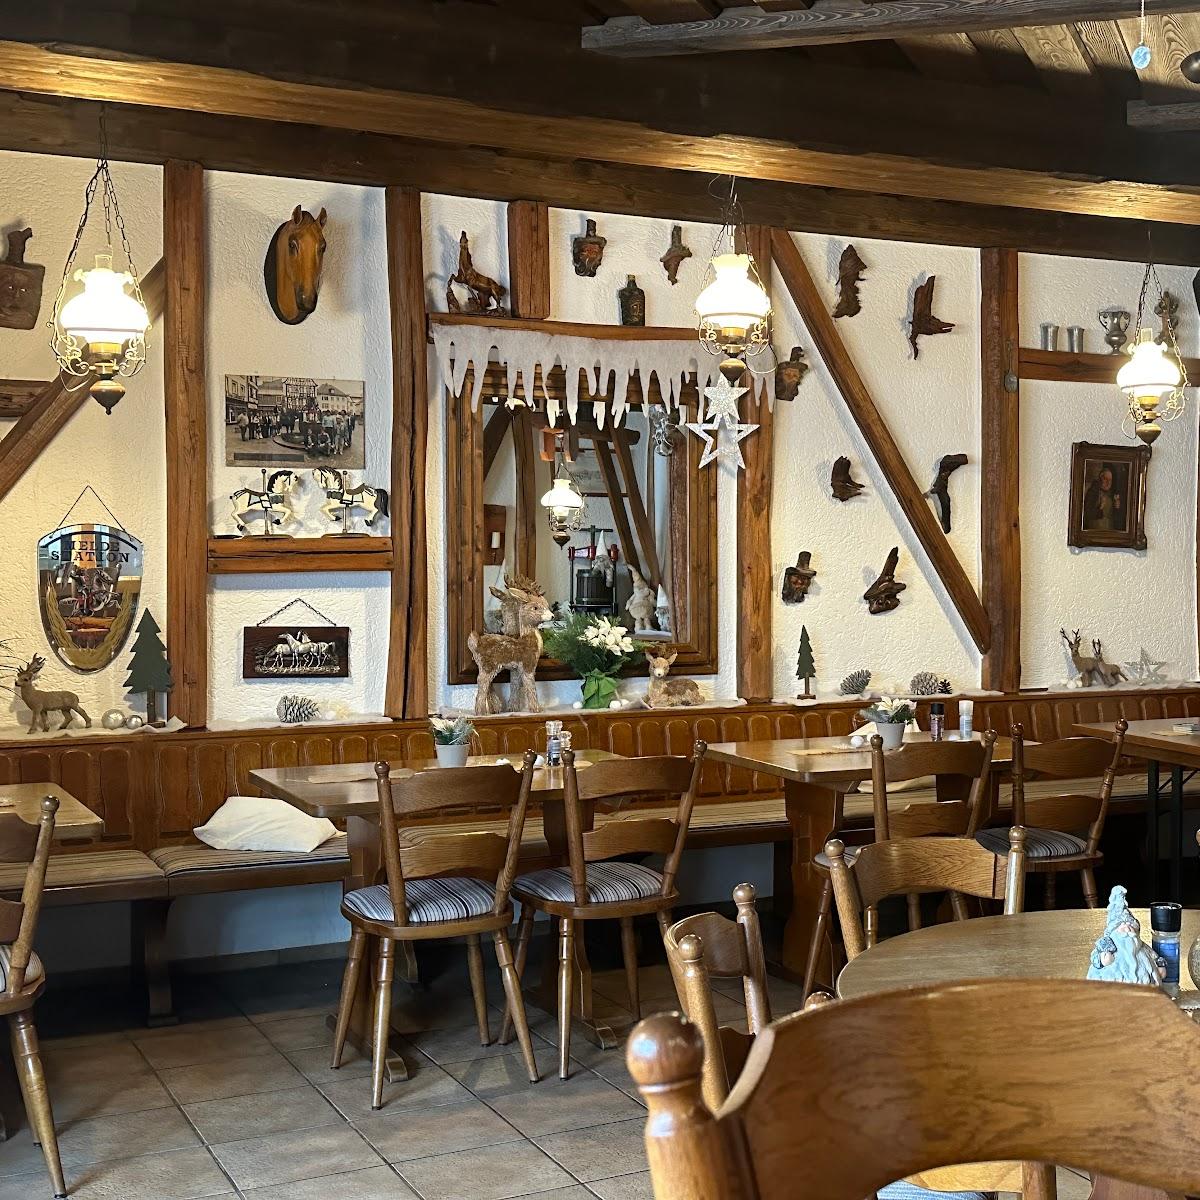 Restaurant "Gasthaus Porth" in Alzey